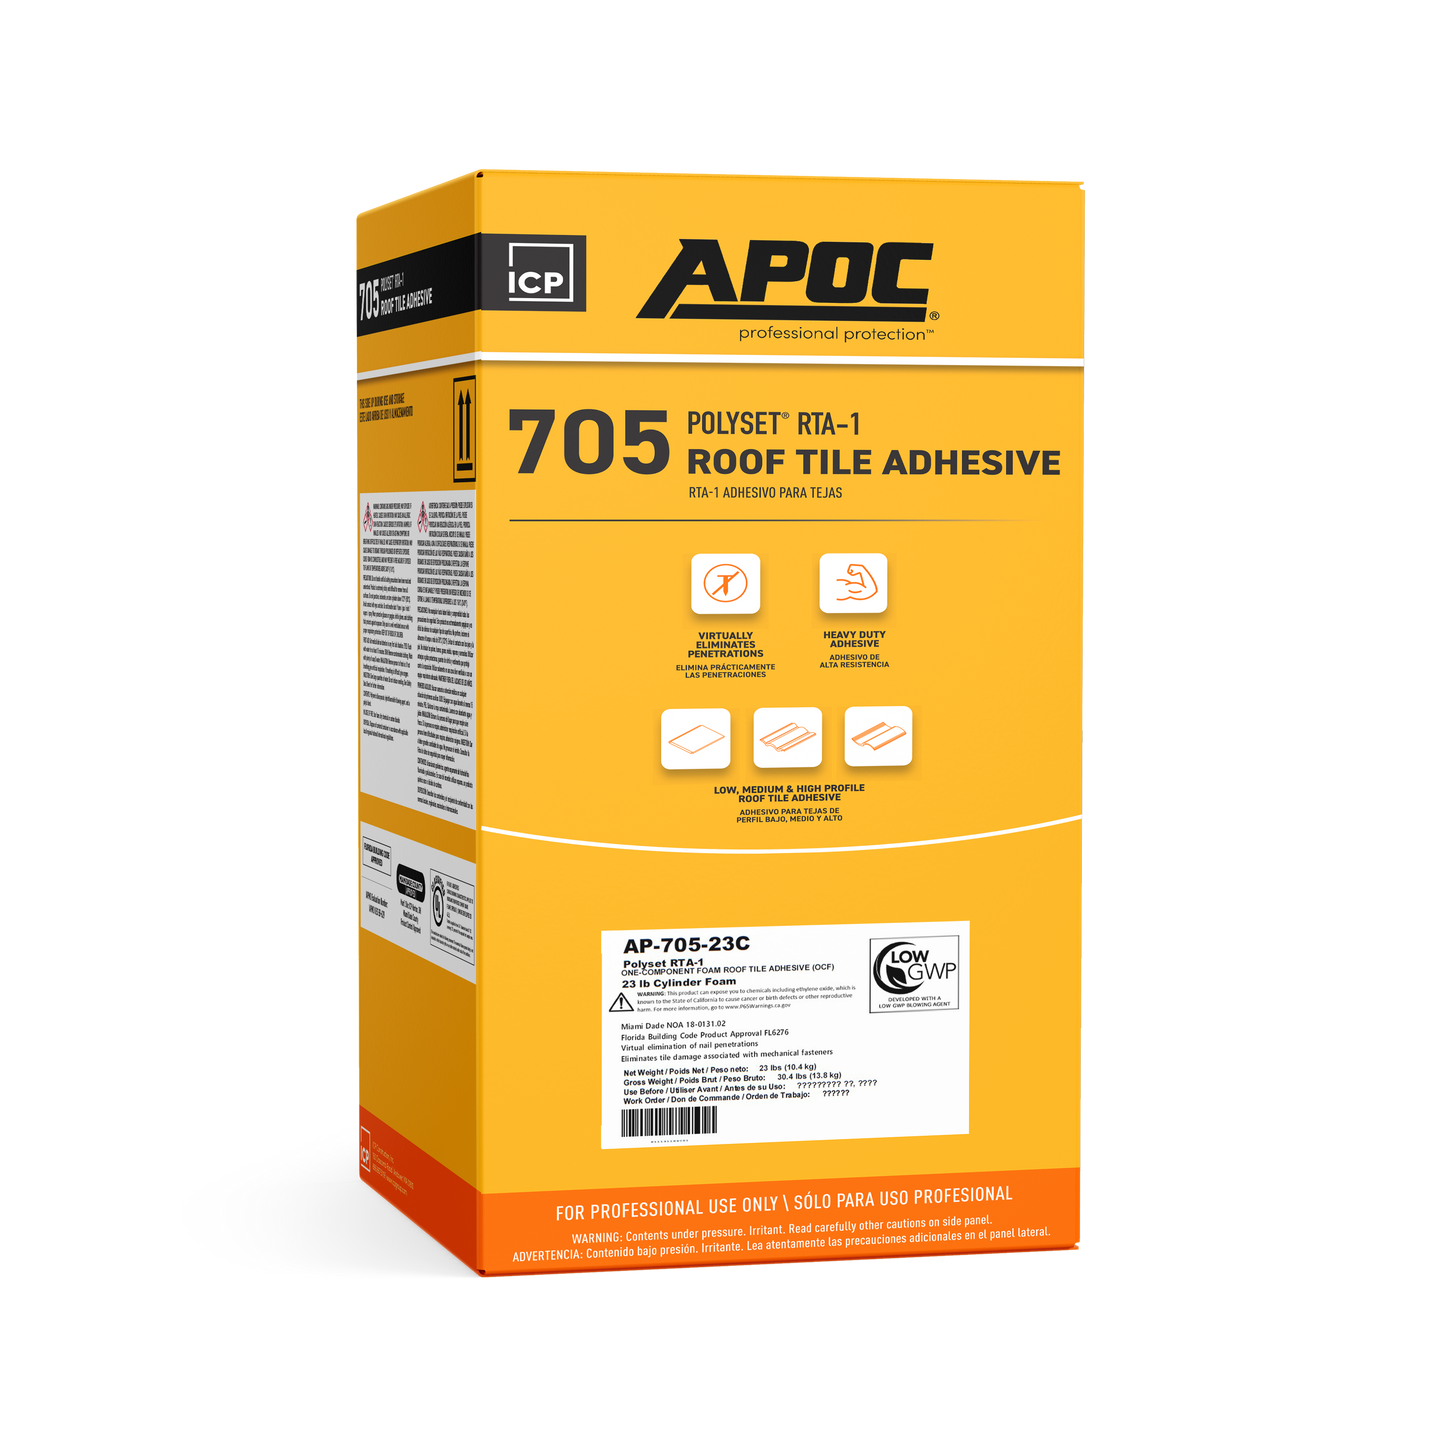 APOC<sup>®</sup> 705<br>Polyset<sup>®</sup> RTA-1 Roof Tile Adhesive